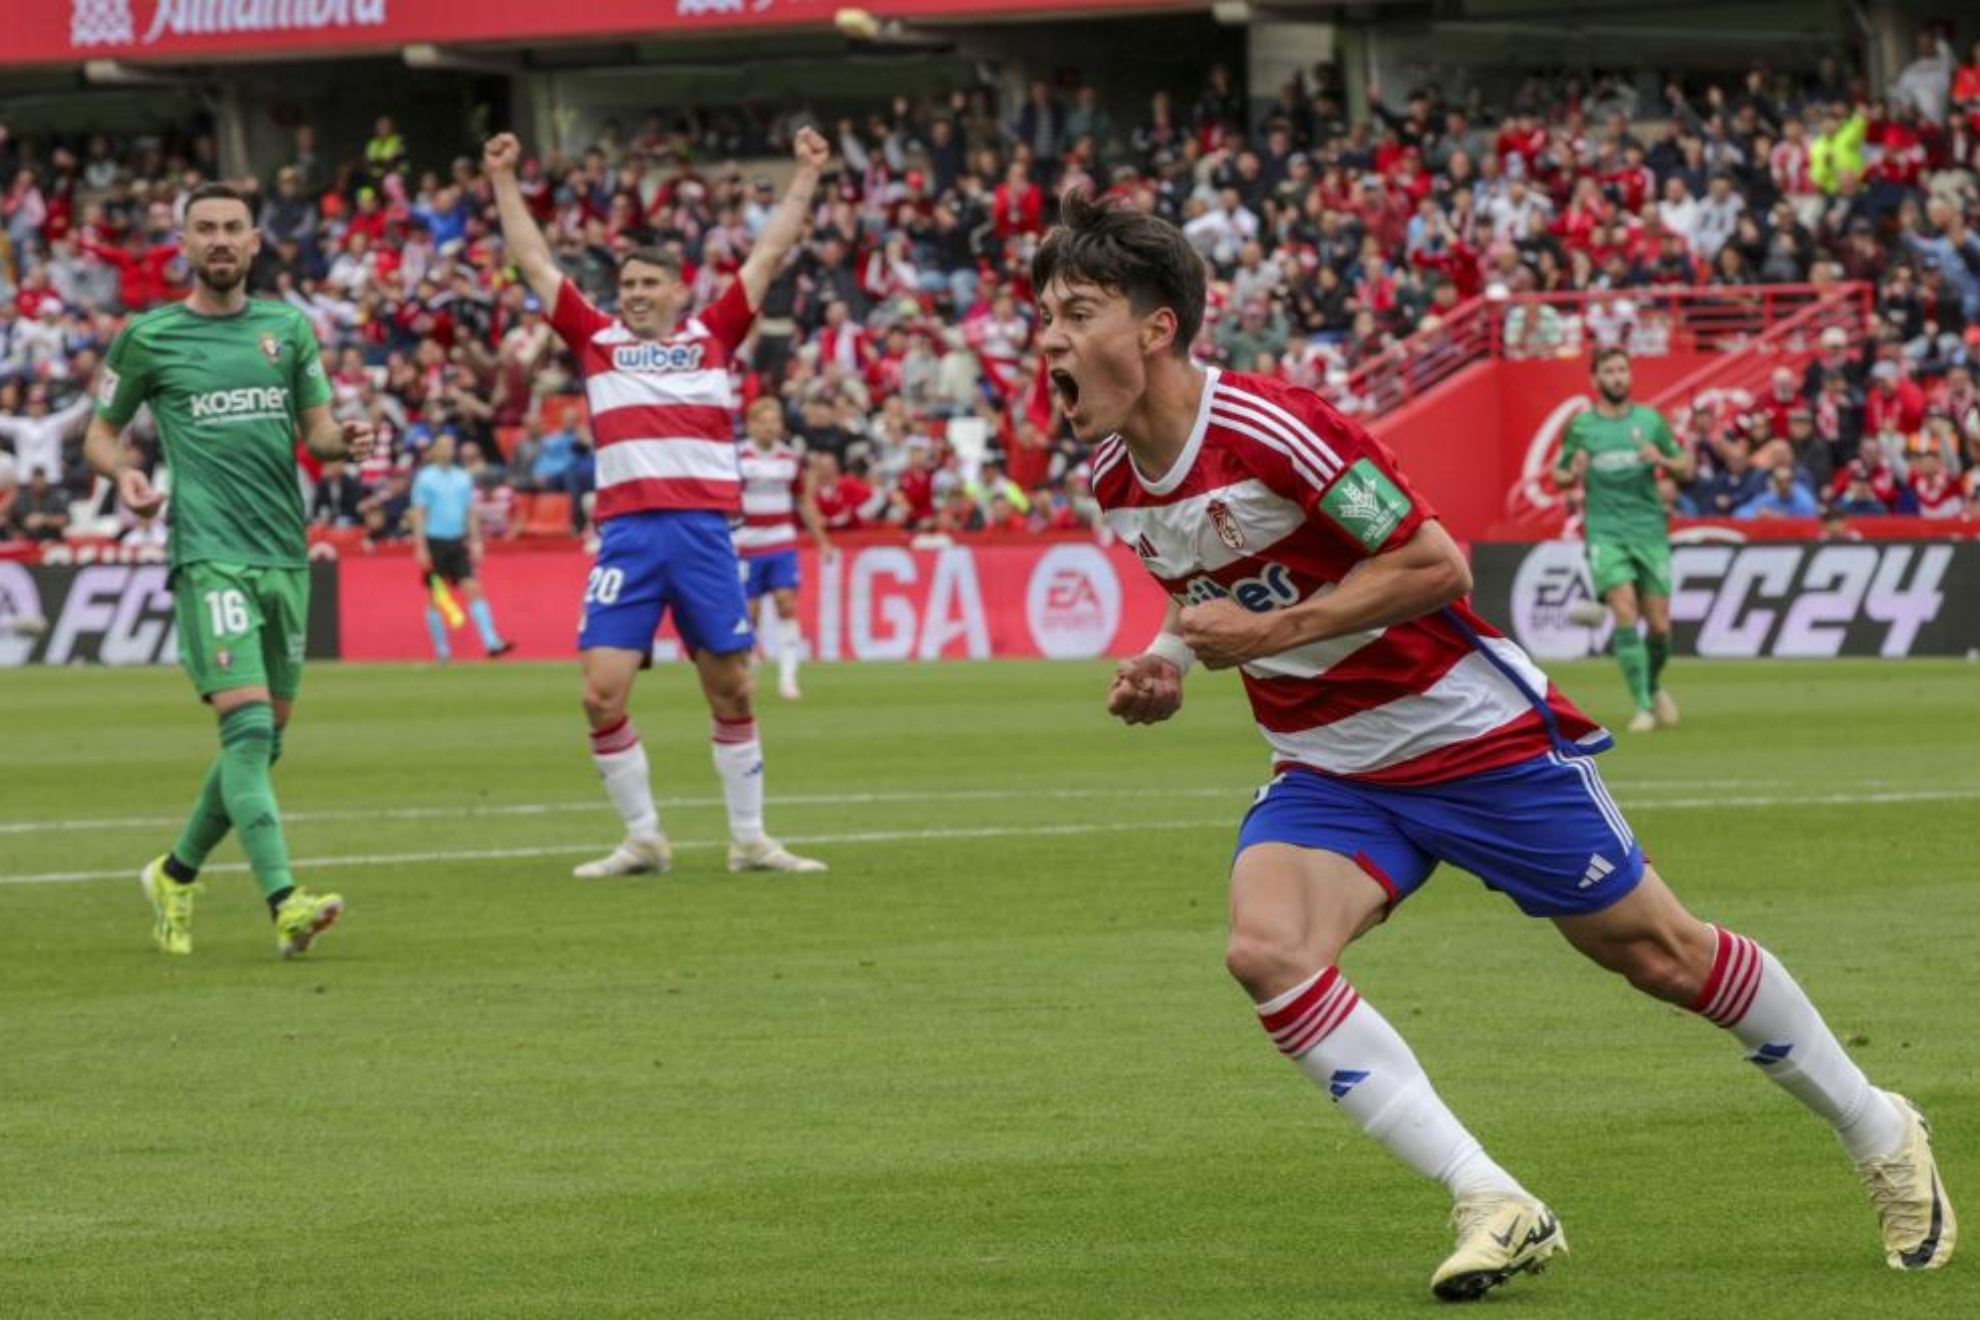 Pellistri celebra su gol contra Osasuna, durante el partido de la jornada 33 de LaLiga EA Sports.